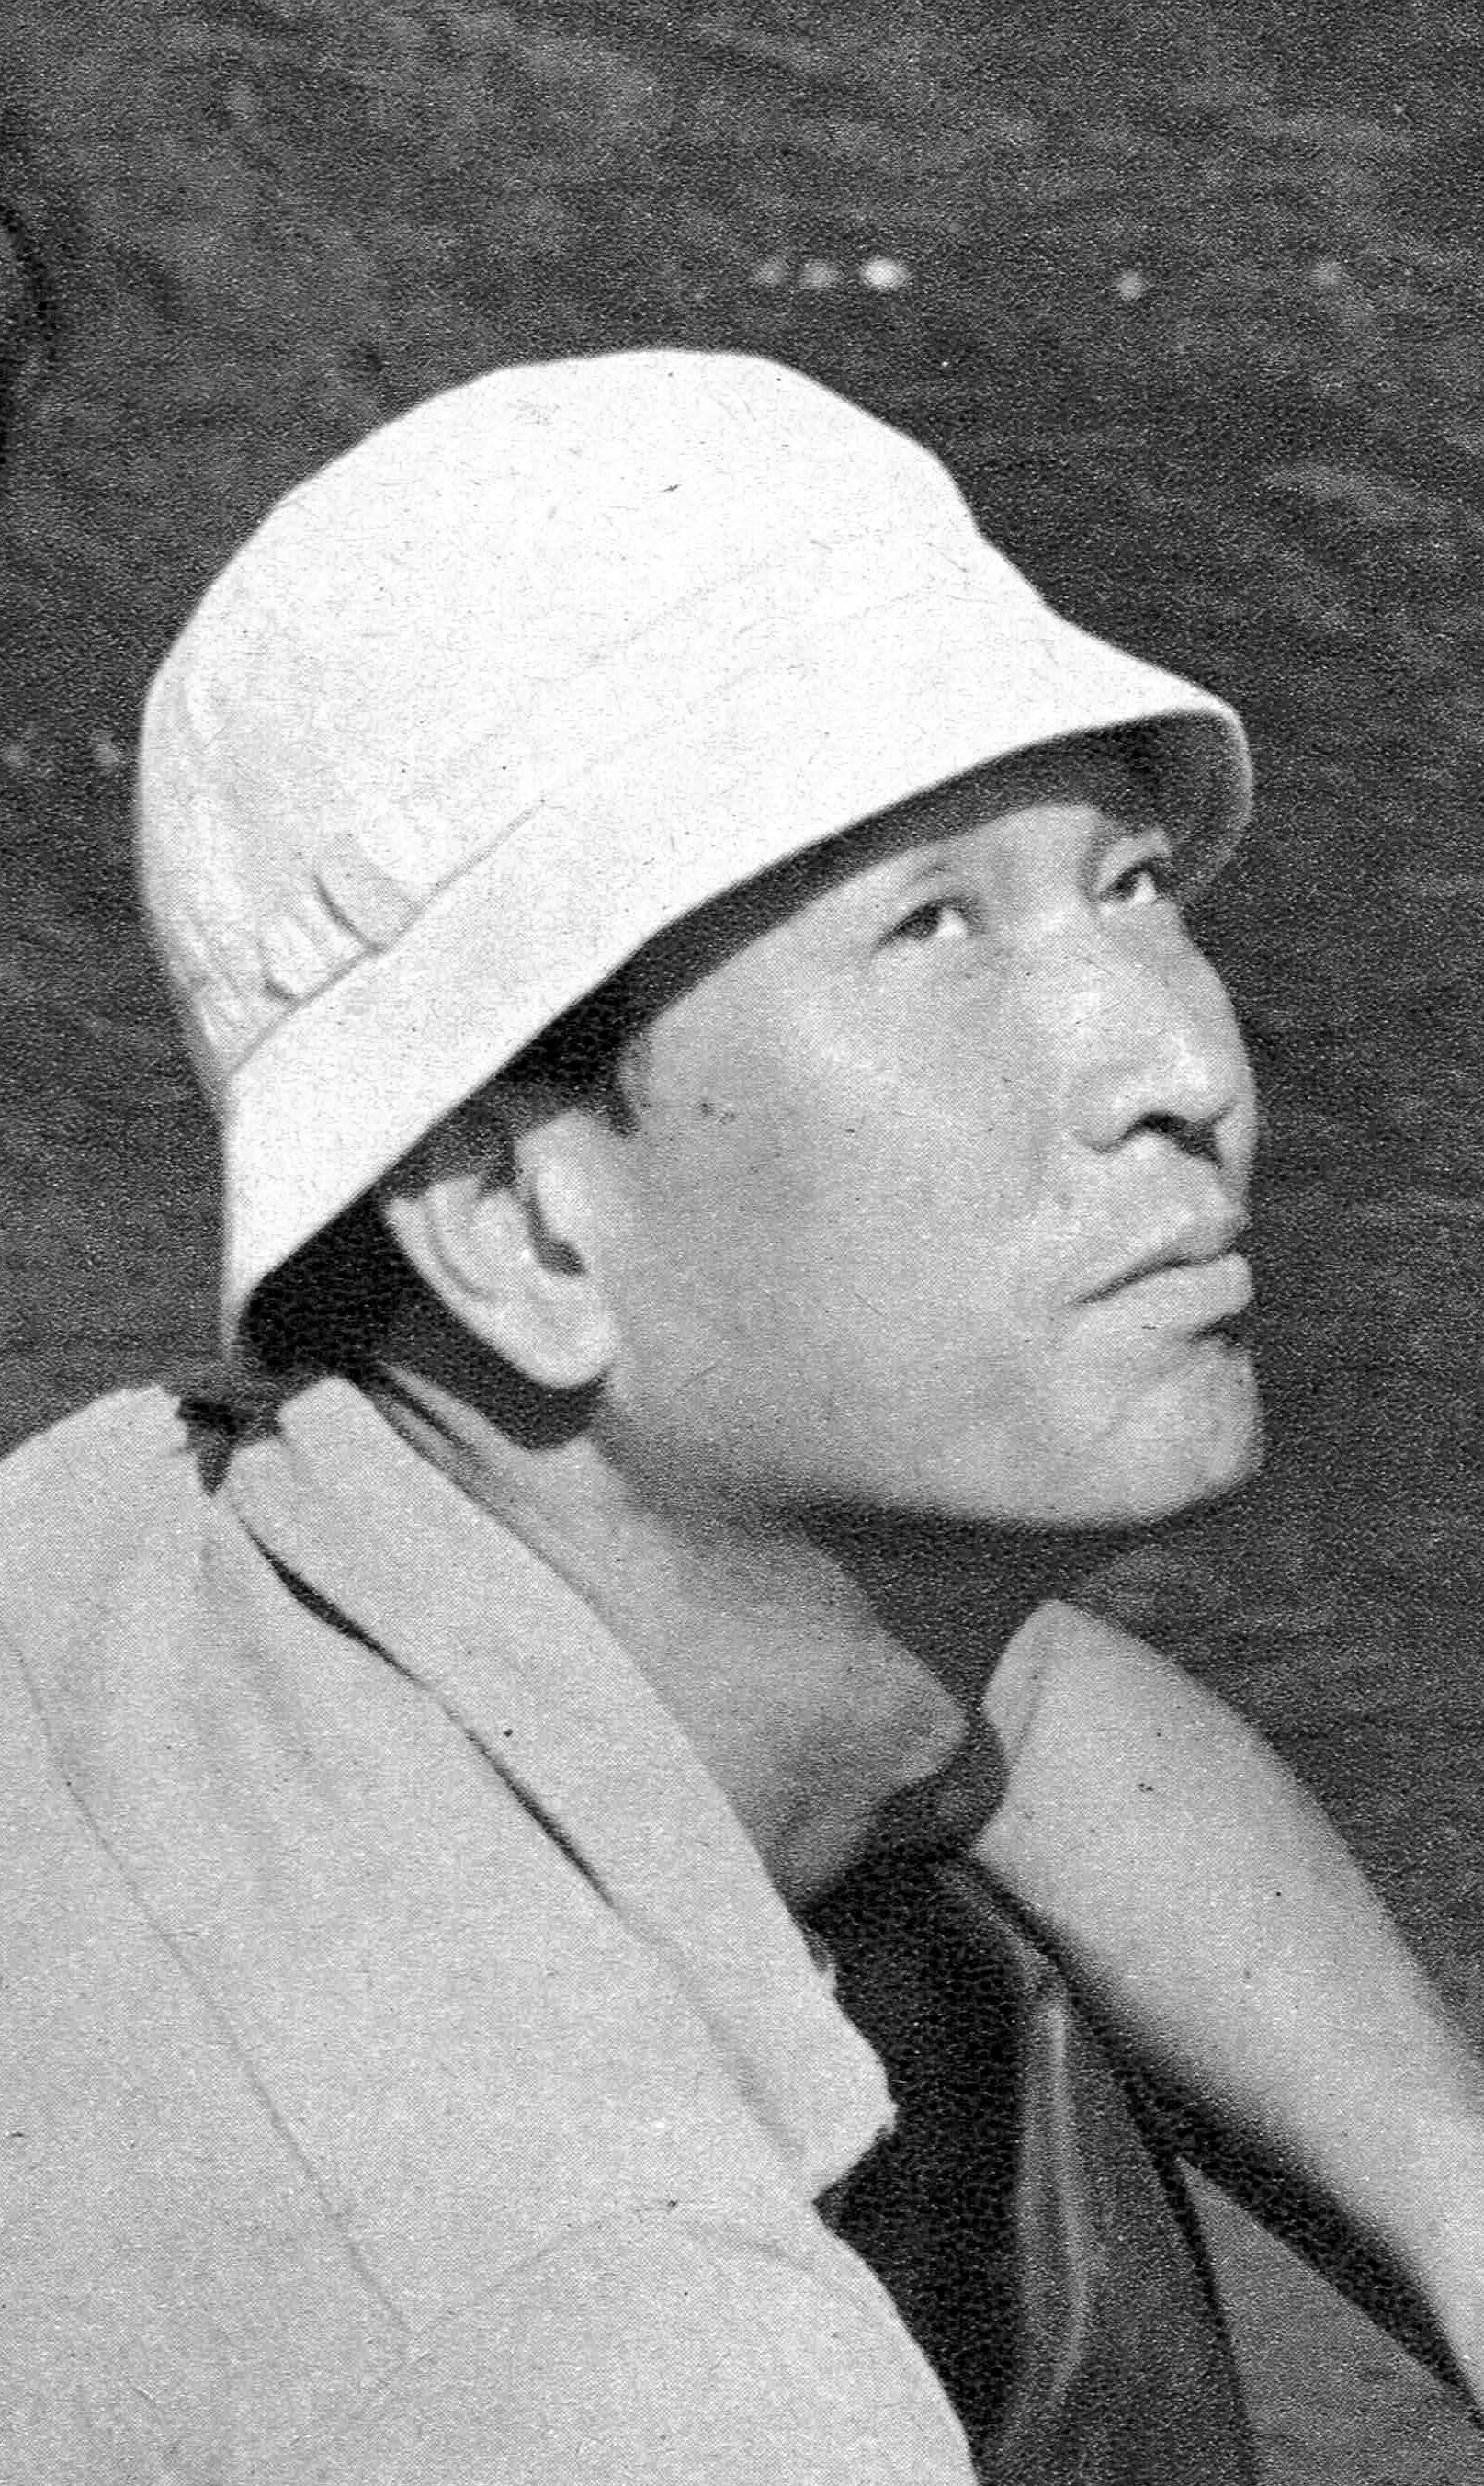 auteur Akira Kurosawa de la citation Page 61: Peu importe où je vais dans le monde, bien que je ne puisse parler aucune langue étrangère, je ne me sens pas hors de propos. Je pense à la Terre comme ma maison. Si tout le monde pensait de cette façon, les gens pourraient remarquer à quel point la friction internationale est insensée et ce serait fini.